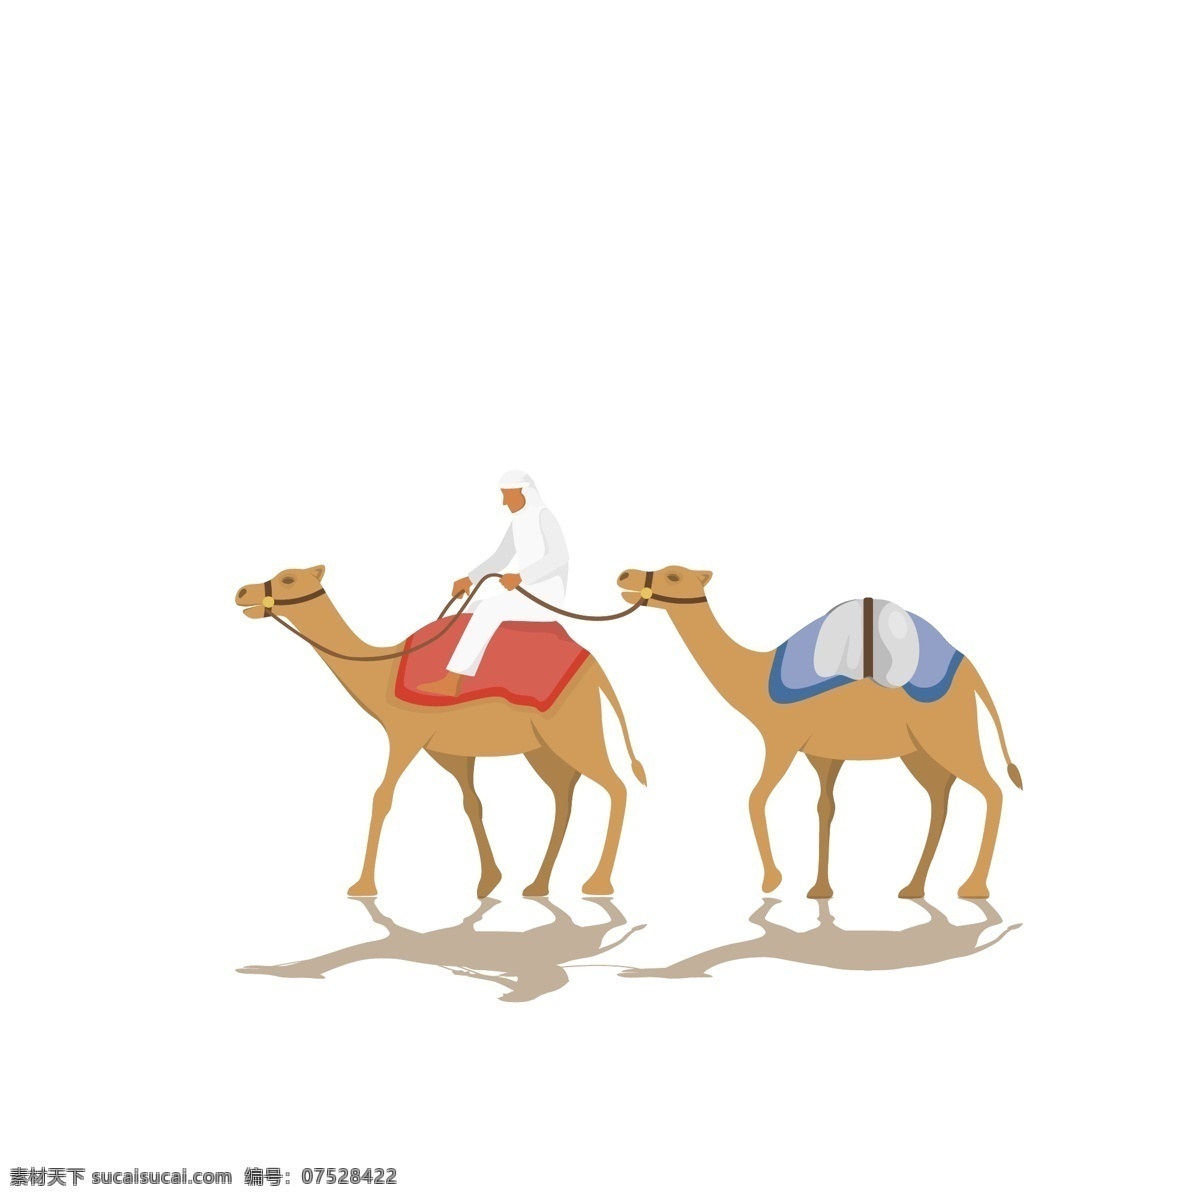 撒哈拉沙漠 骆驼 队 骆驼插画 插图 沙漠骆驼插画 可爱插画 插画 手绘 简笔画 晓雪设计 卡通插画 艺术插画 抽象插画 动漫动画